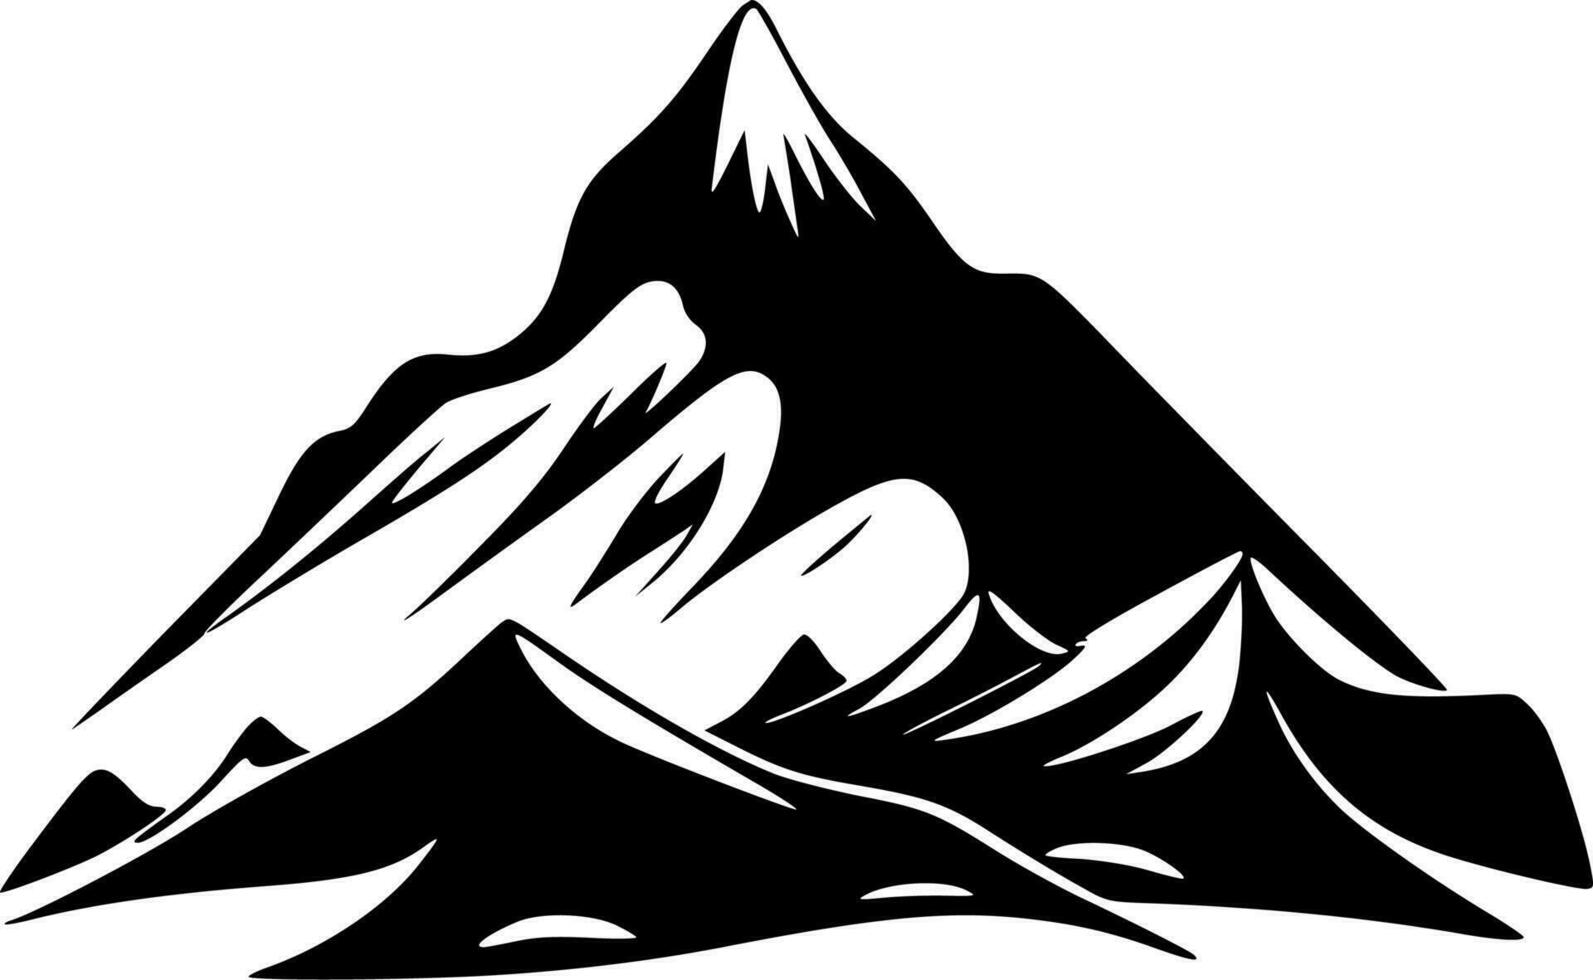 berg, zwart en wit vector illustratie